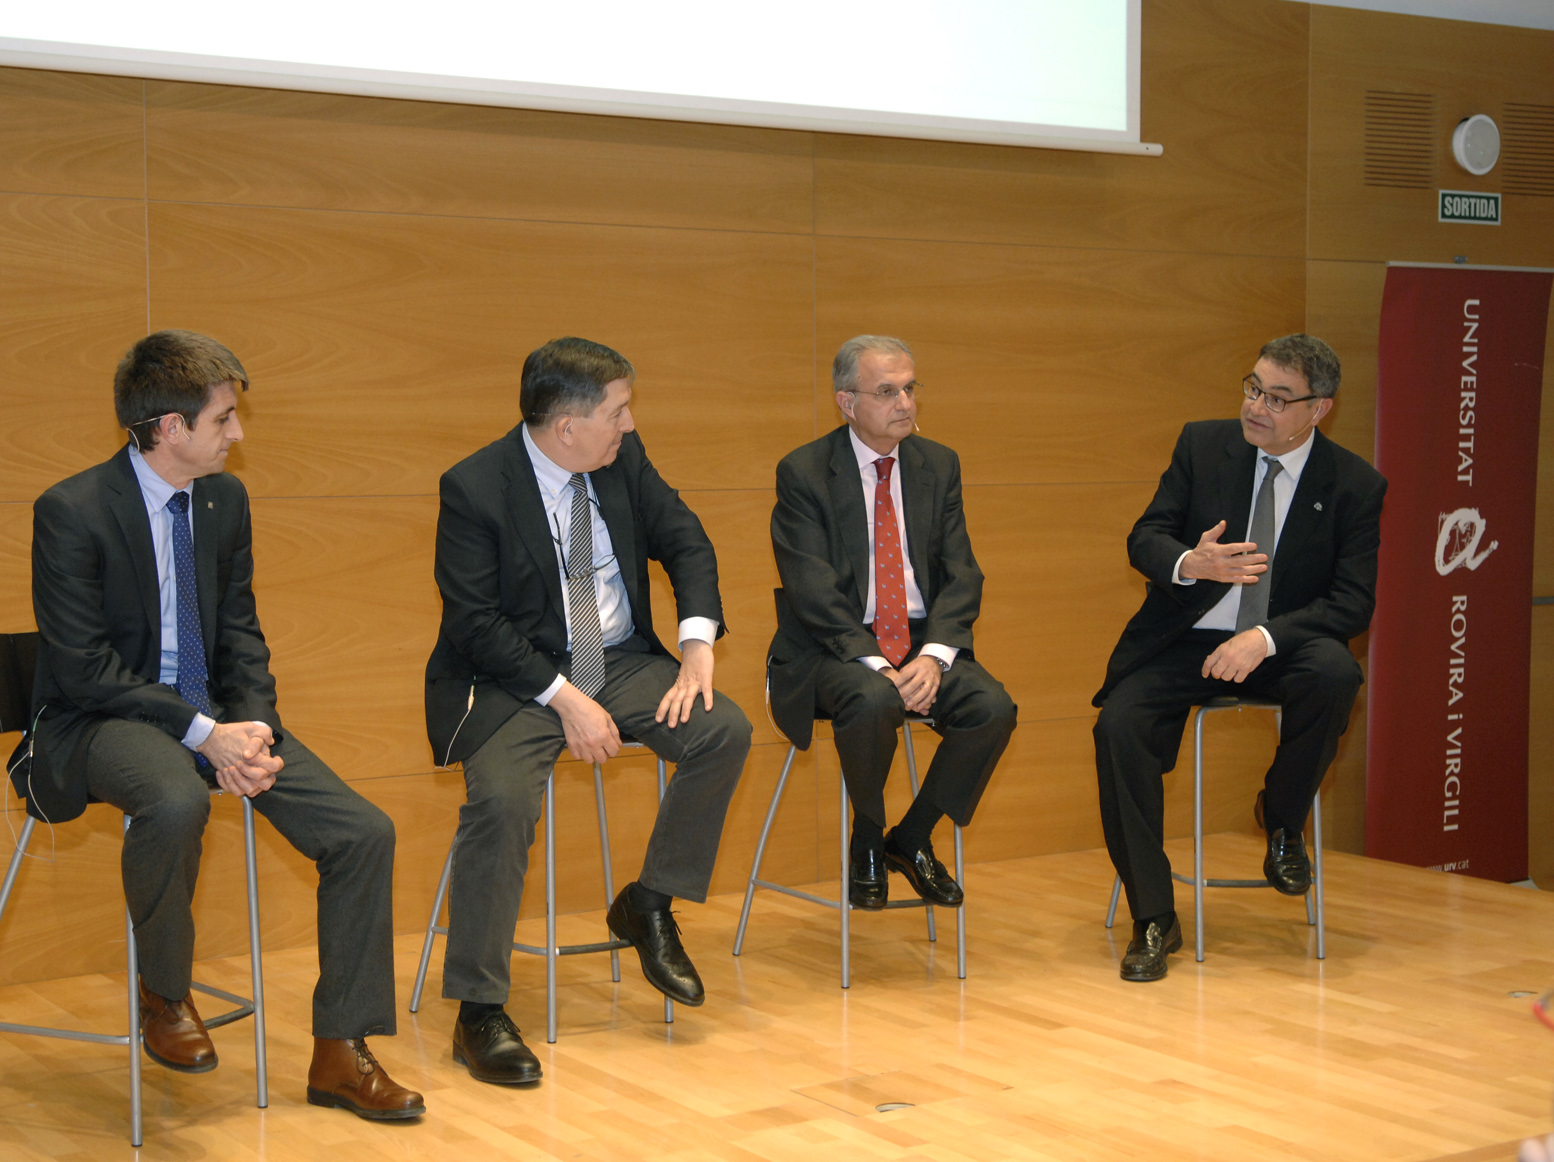 De izquierda a derecha, Xavier Pallarès, Josep Anton Ferré, Ignacio Egea y Joan Pedrerol, en la mesa redonda.